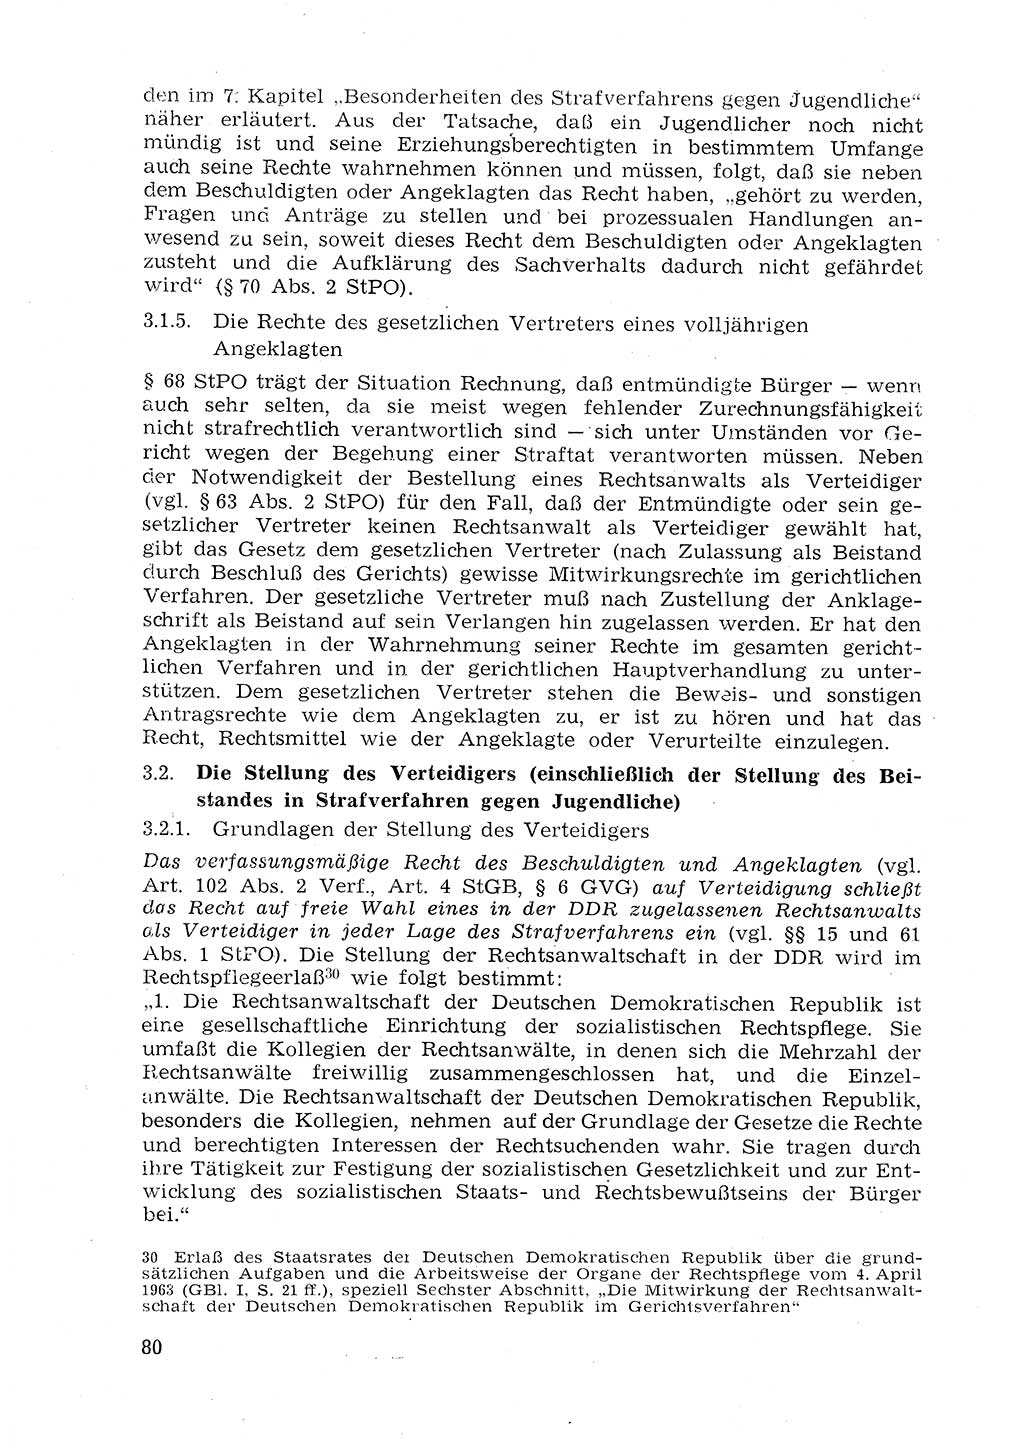 Strafprozeßrecht der DDR (Deutsche Demokratische Republik), Lehrmaterial 1969, Seite 80 (Strafprozeßr. DDR Lehrmat. 1969, S. 80)